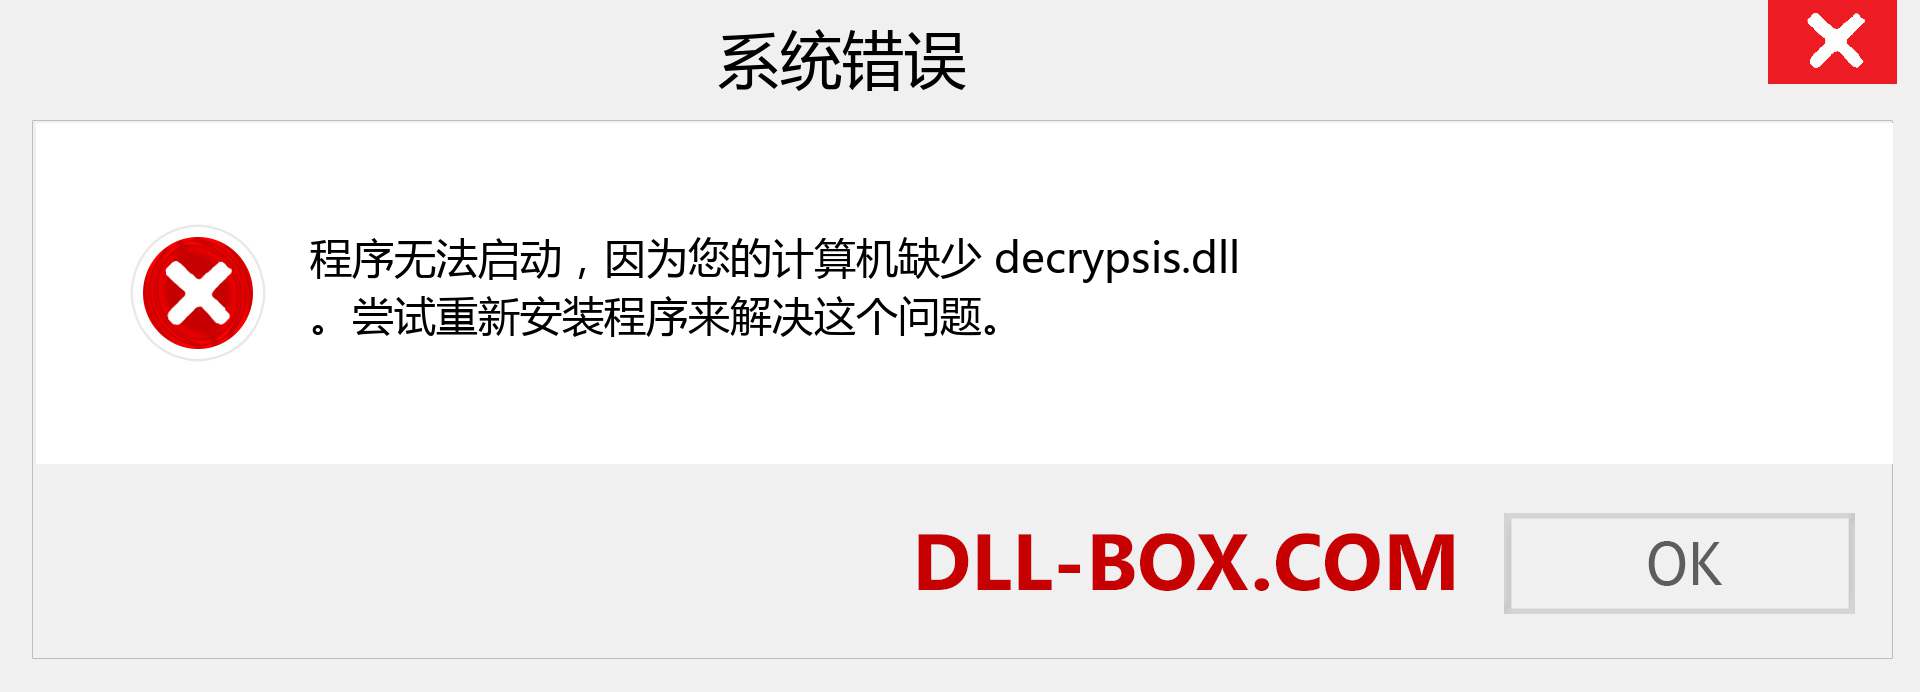 decrypsis.dll 文件丢失？。 适用于 Windows 7、8、10 的下载 - 修复 Windows、照片、图像上的 decrypsis dll 丢失错误